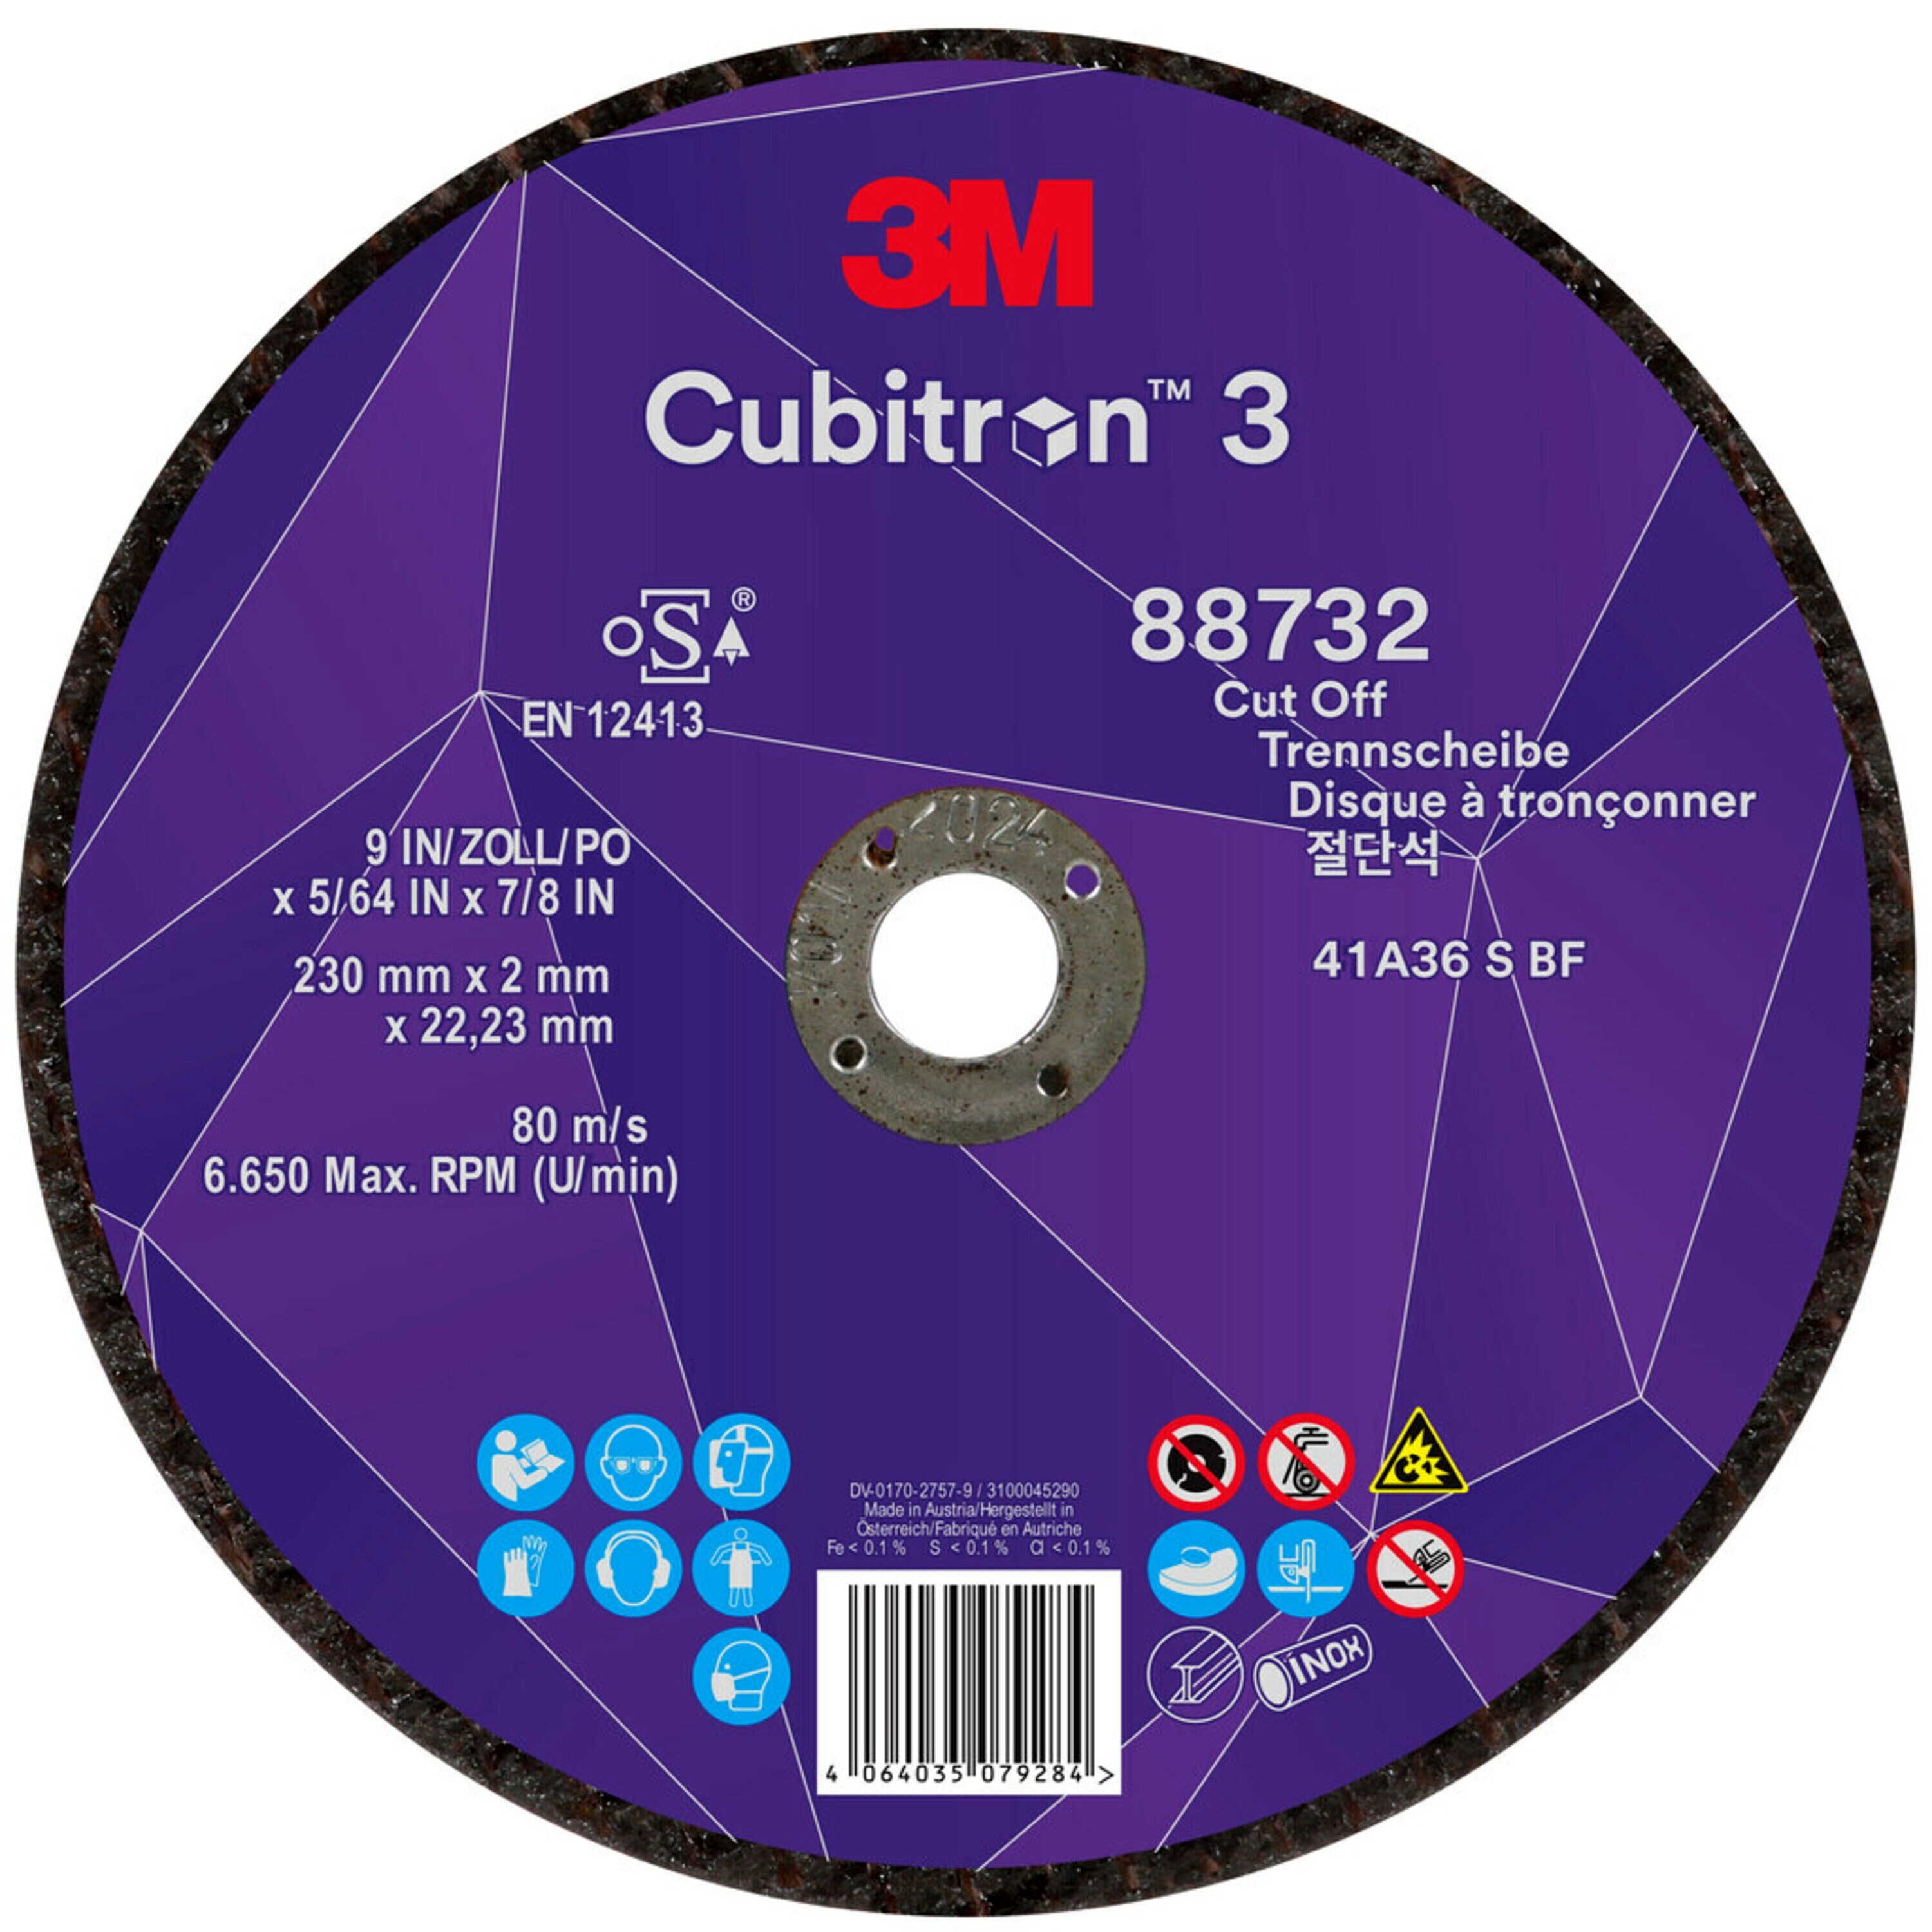 Disco de corte 3M Cubitron 3, 230 mm, 2 mm, 22,23 mm, 36 , tipo 41 #88732